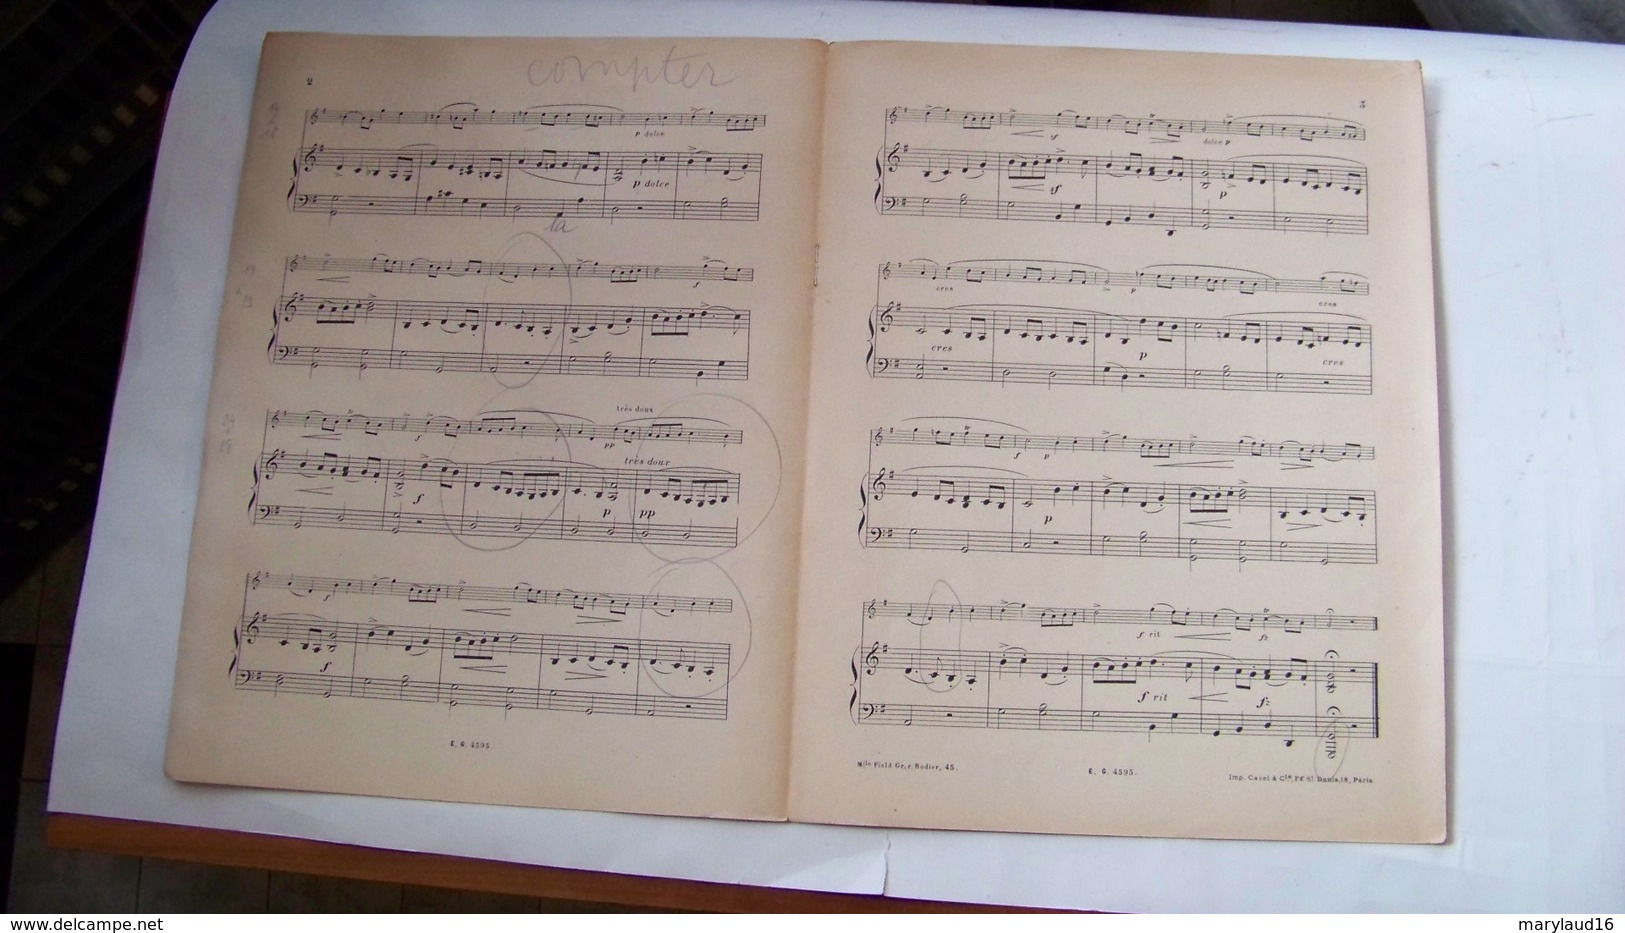 Martini - Les Moutons (célèbre Gavotte) Pour Violon Et Piano - Transcription Bartholomeus - Edition Gallet - Scholingsboek